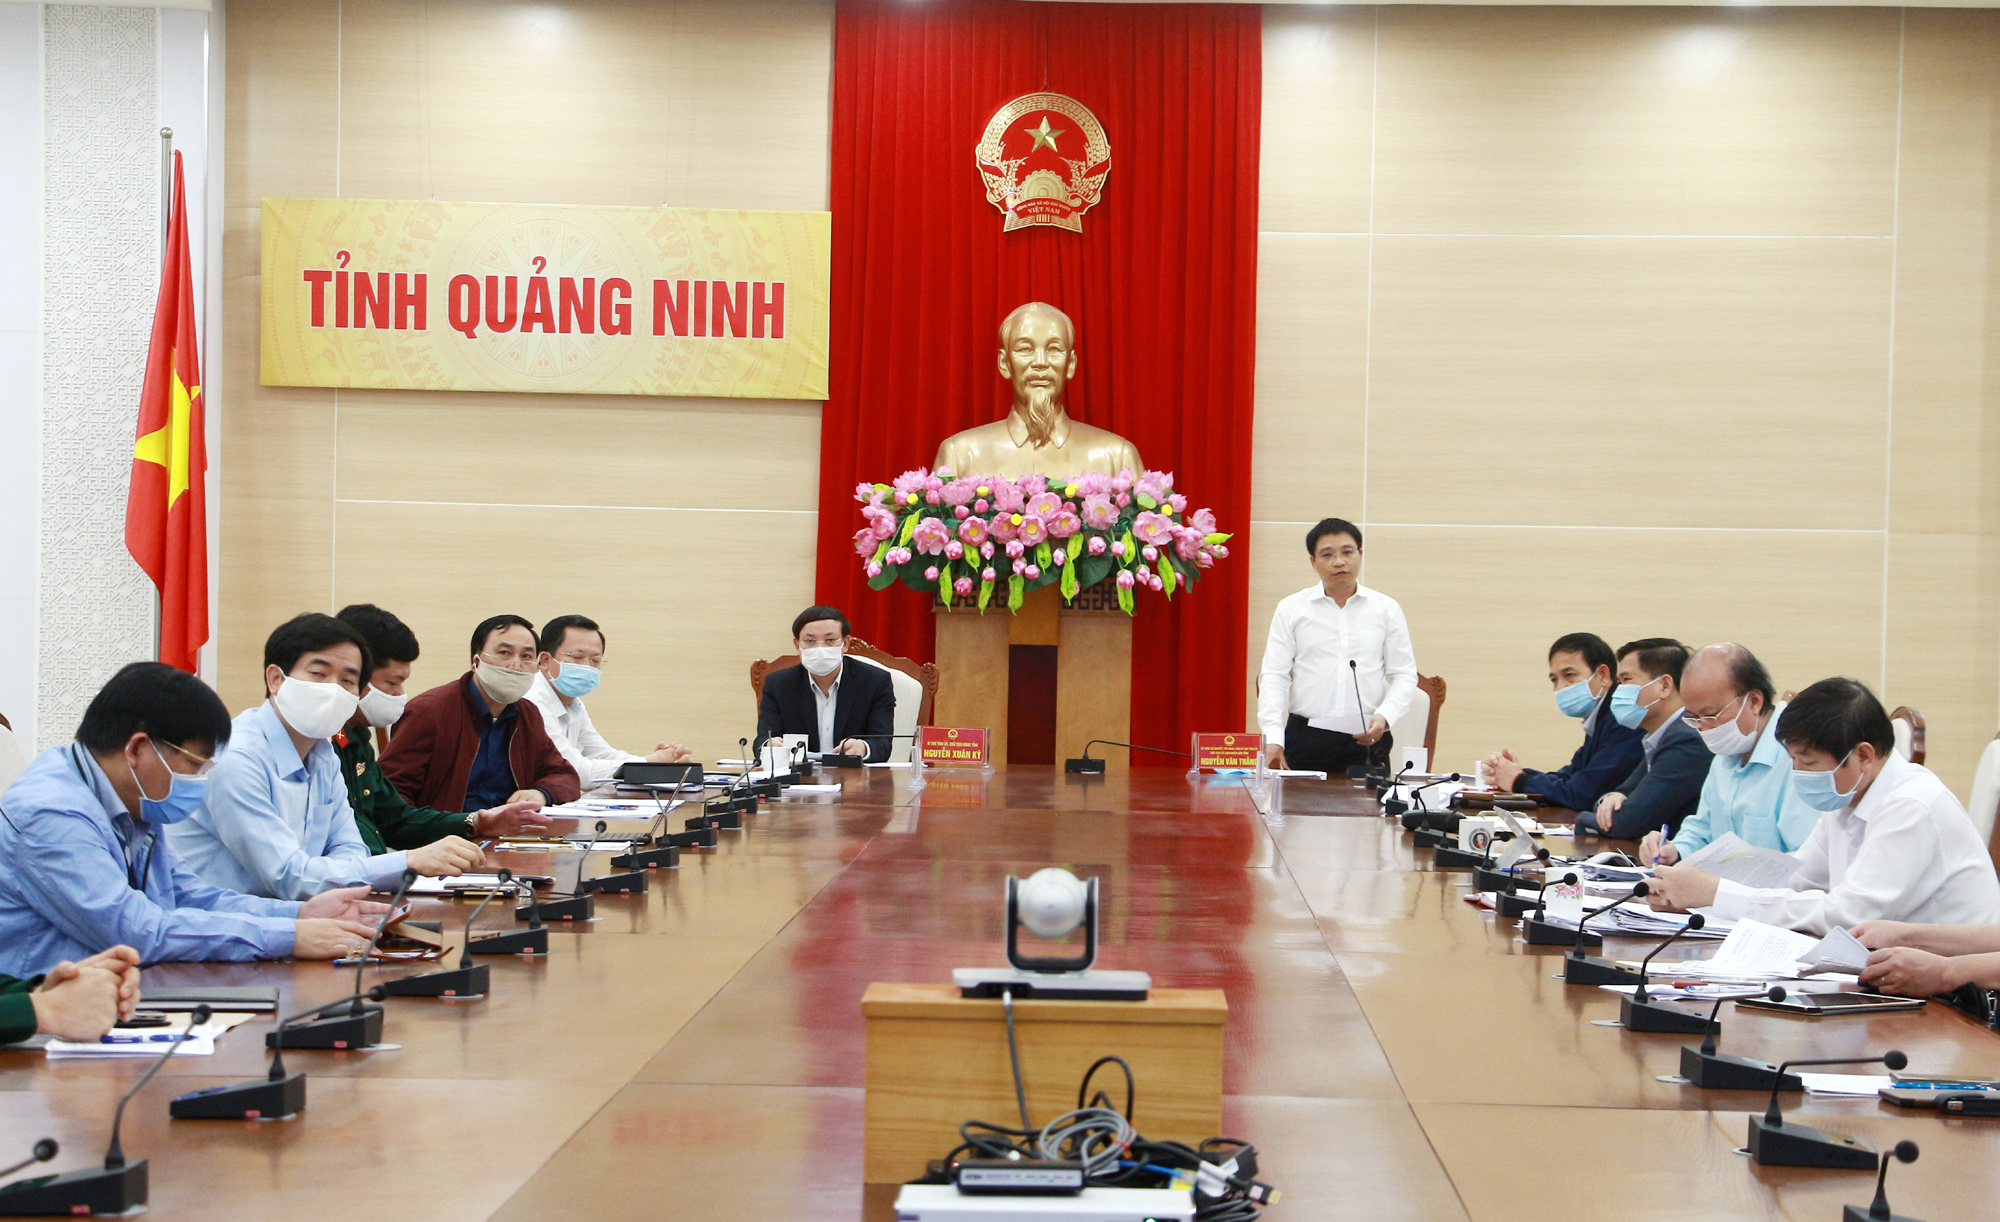 Đồng chí Nguyễn Văn Thắng, Chủ tịch UBND tỉnh, phát biểu tại điểm cầu trực tuyến Quảng Ninh.